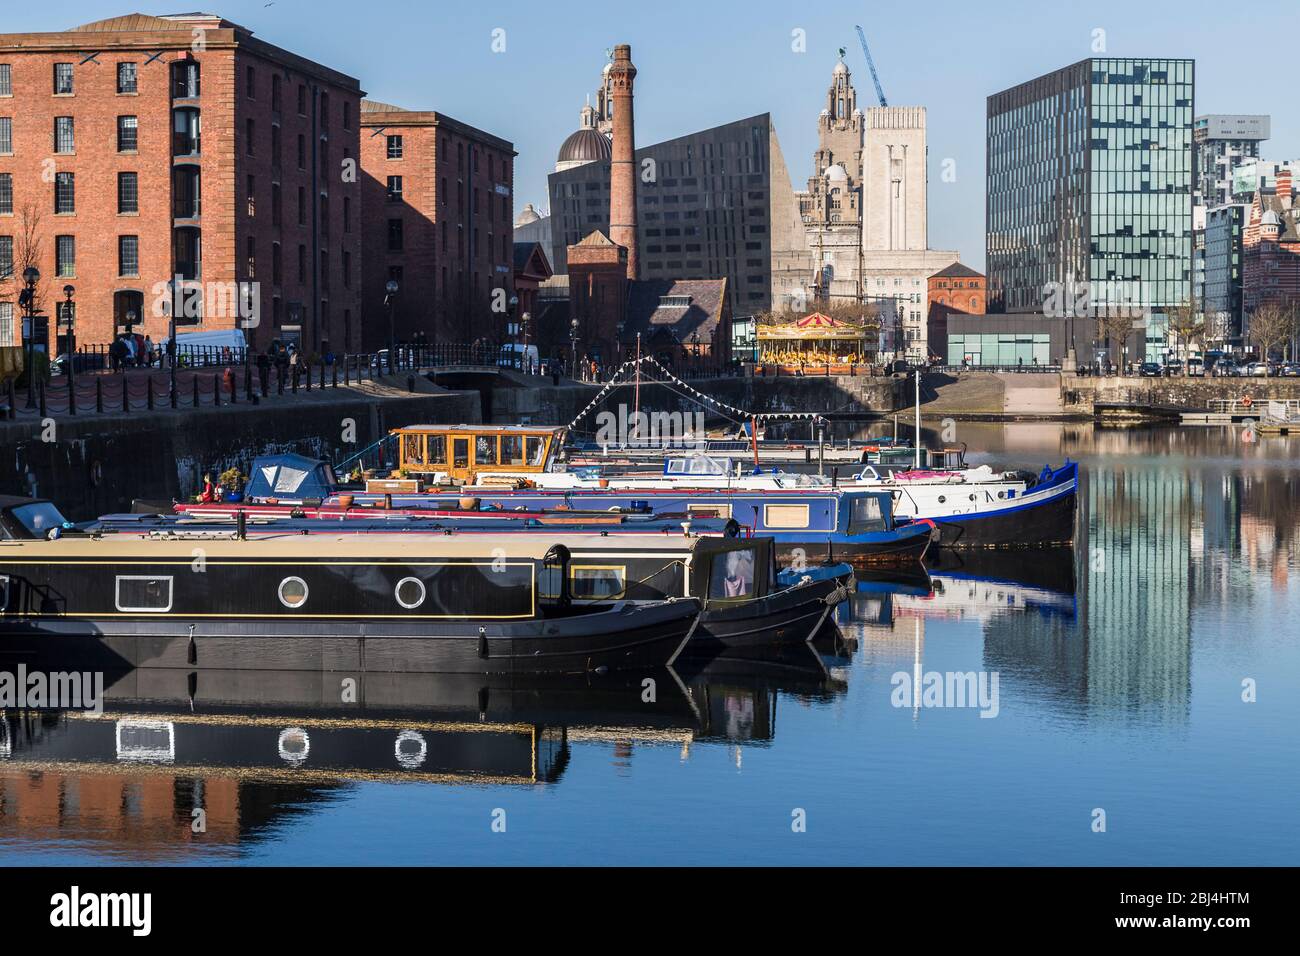 Des bateaux amarrés dans les eaux tranquilles de Salthouse Dock à Liverpool. Banque D'Images